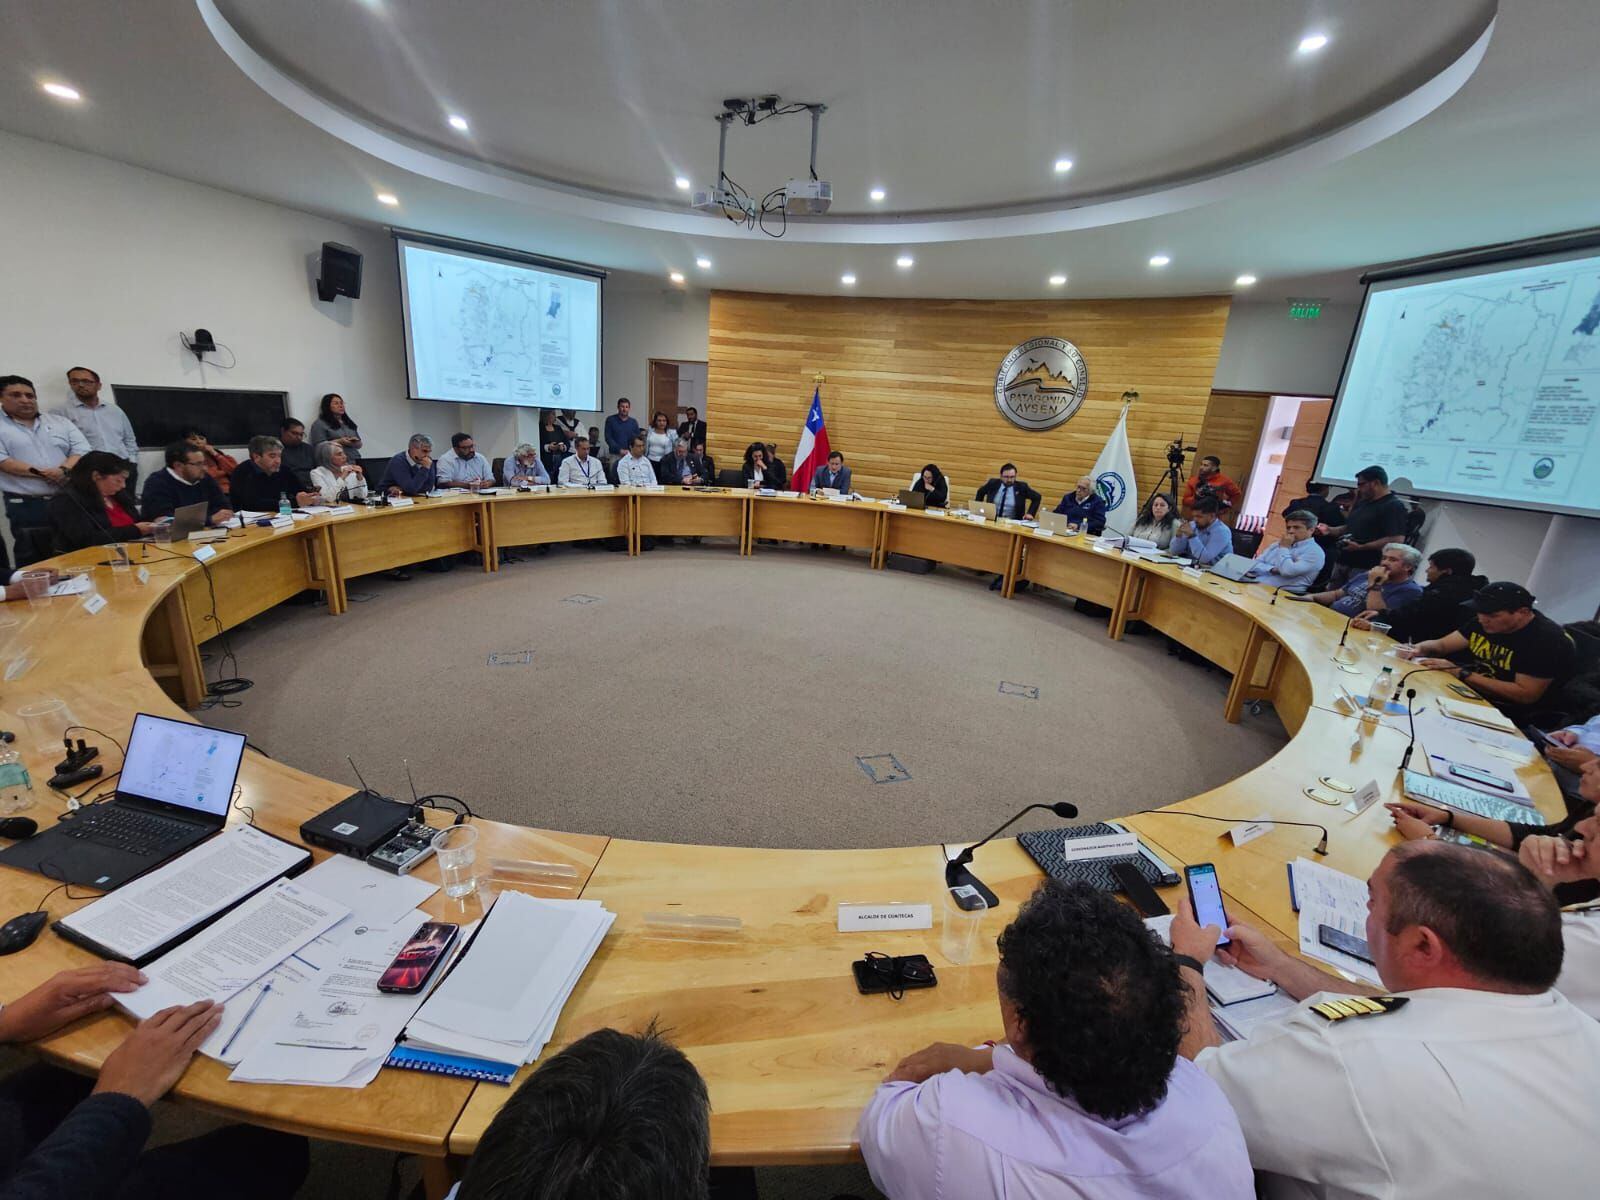 ley lafkenche: con votos del ejecutivo, comisión regional de aysén rechaza controvertida solicitud de dos comunidades indígenas